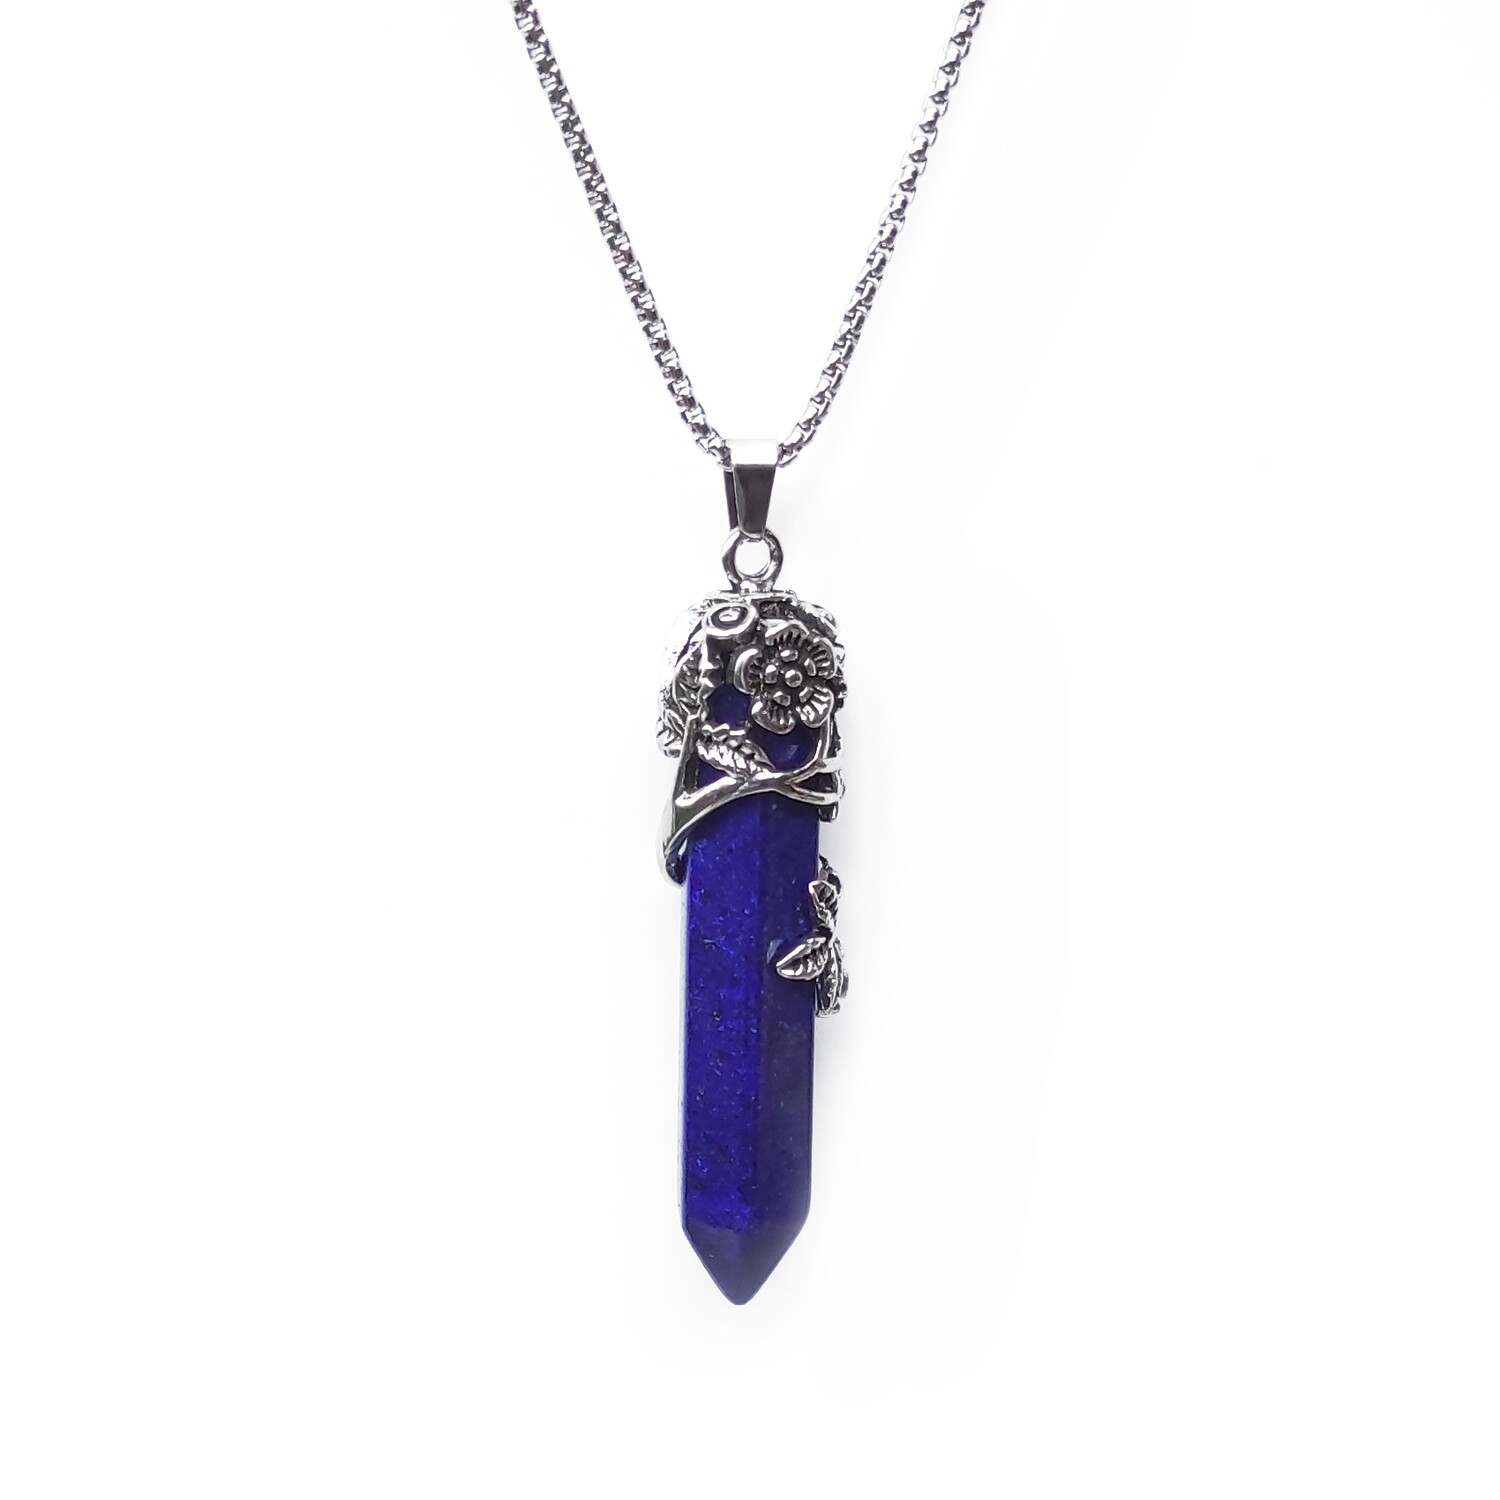 Lapis Lazuli pendant gemstone necklace (Flower holder)